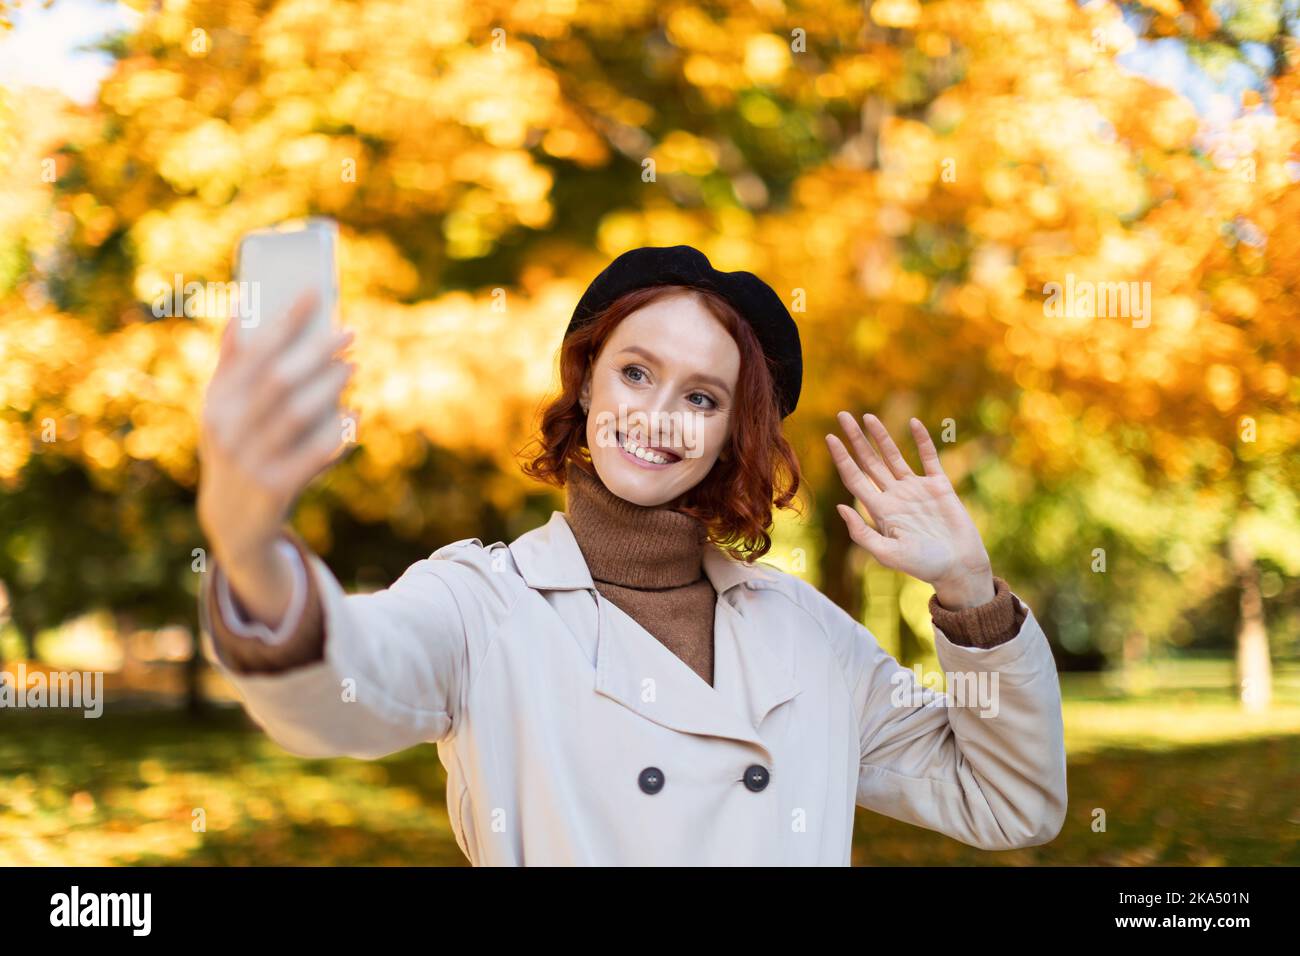 Lächelnde junge europäische rothaarige Dame in Regenmantel und Baskenmütze macht Selfie oder Video auf dem Smartphone, winkende Hand Stockfoto